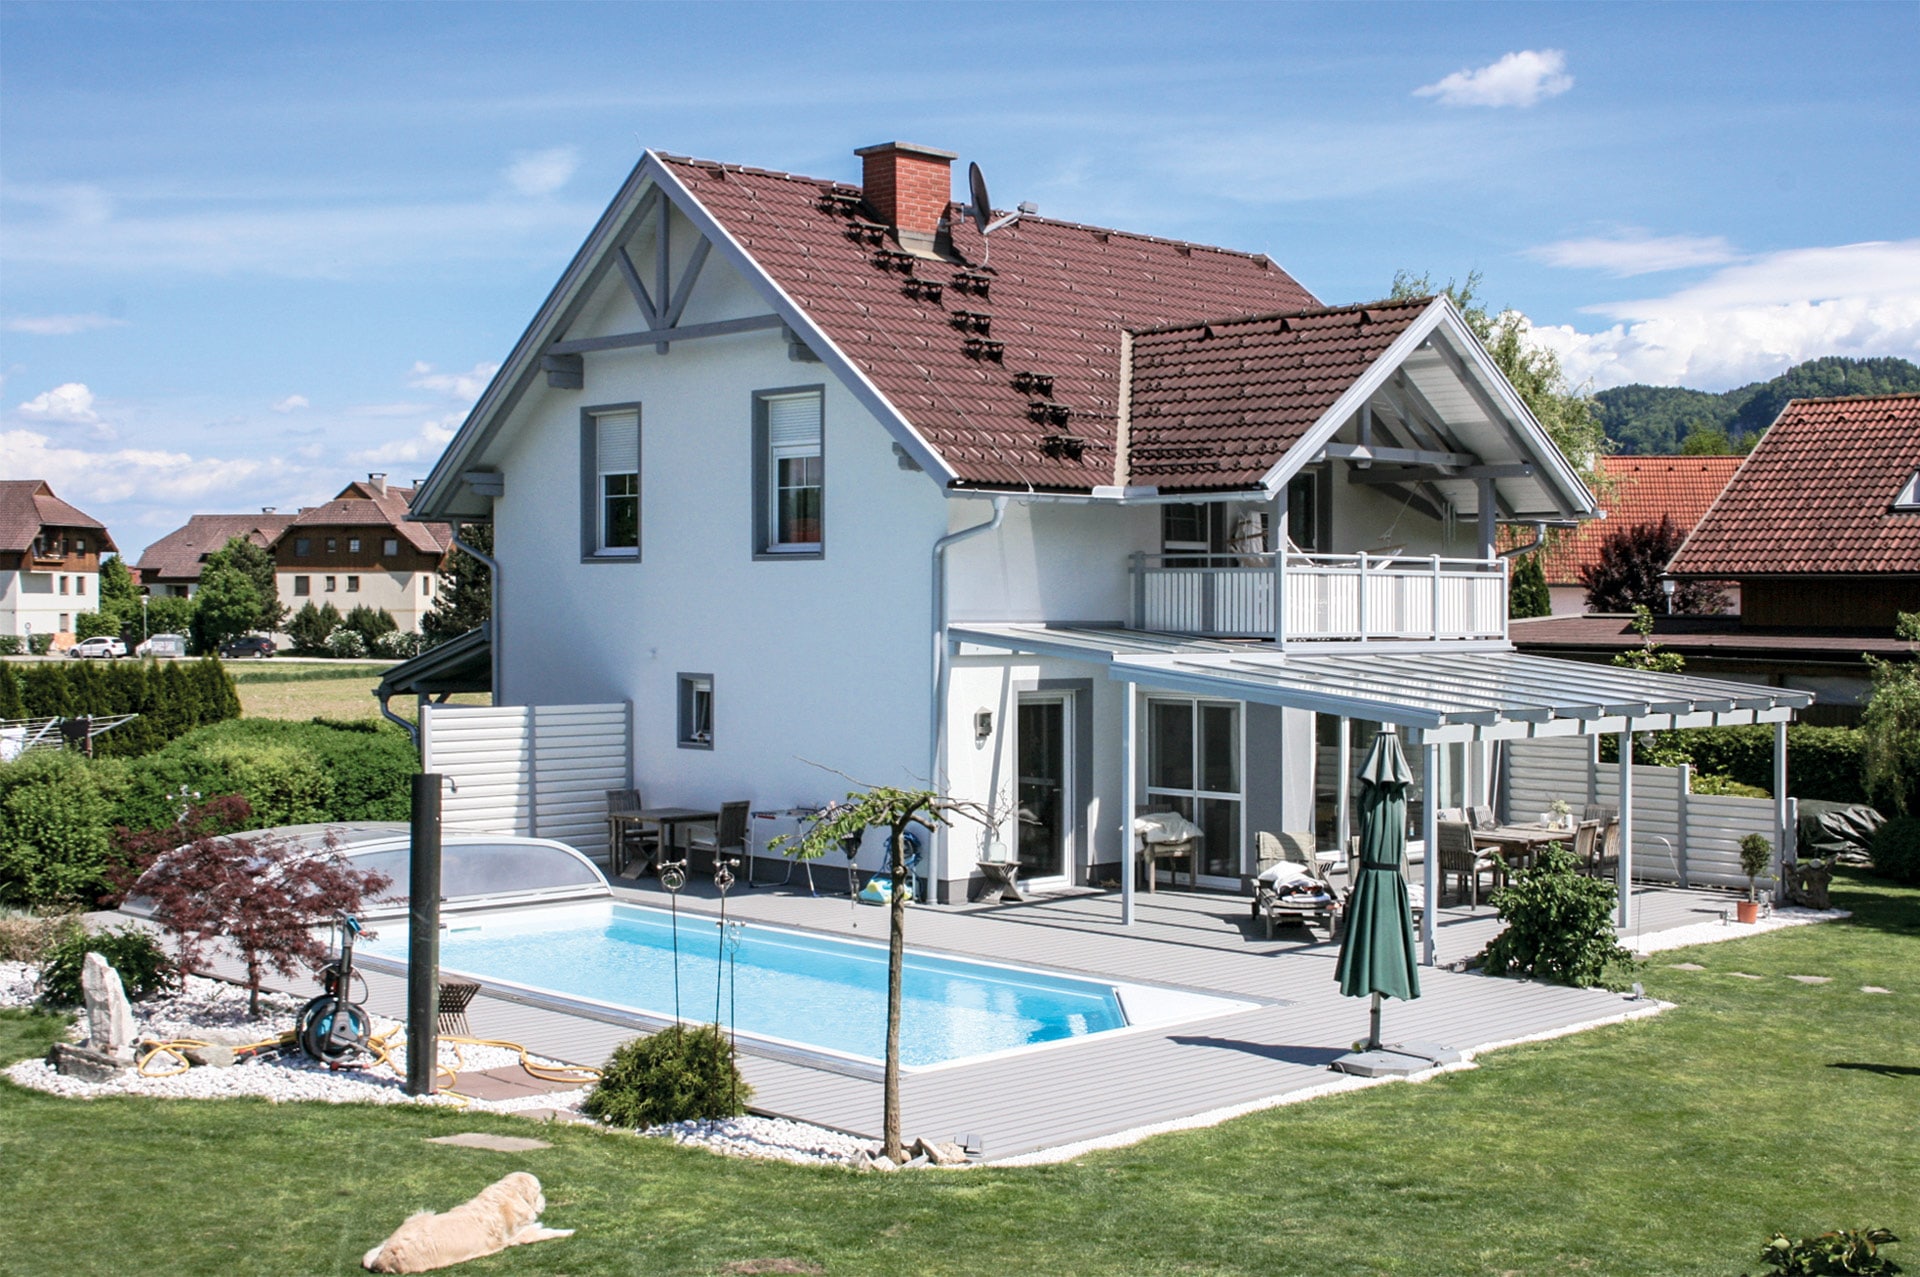 B Alu 06 c | hellgrauer Aluminium-Boden bei Terrasse und Pool, Aufnahme ganzes Haus | Svoboda